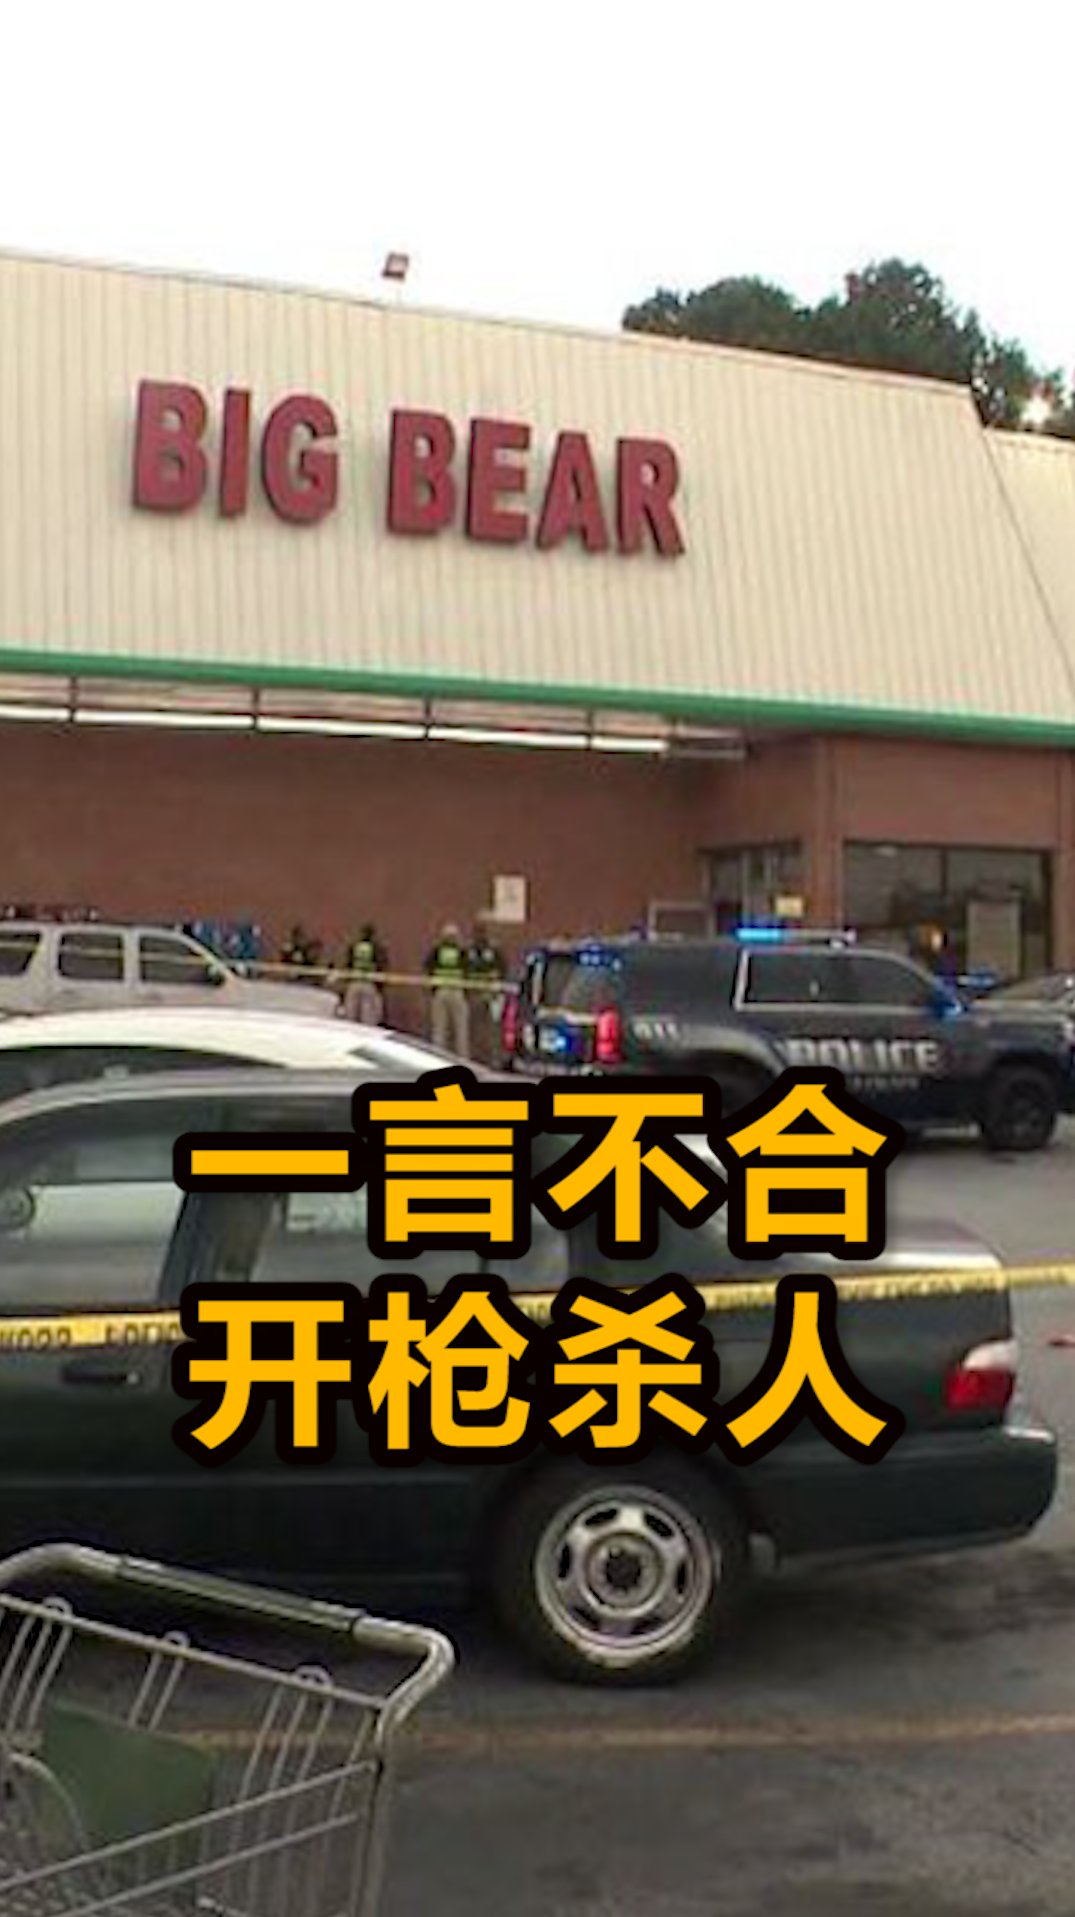 美国男子进超市不戴口罩,被提醒后拒不服从,开枪打死店员